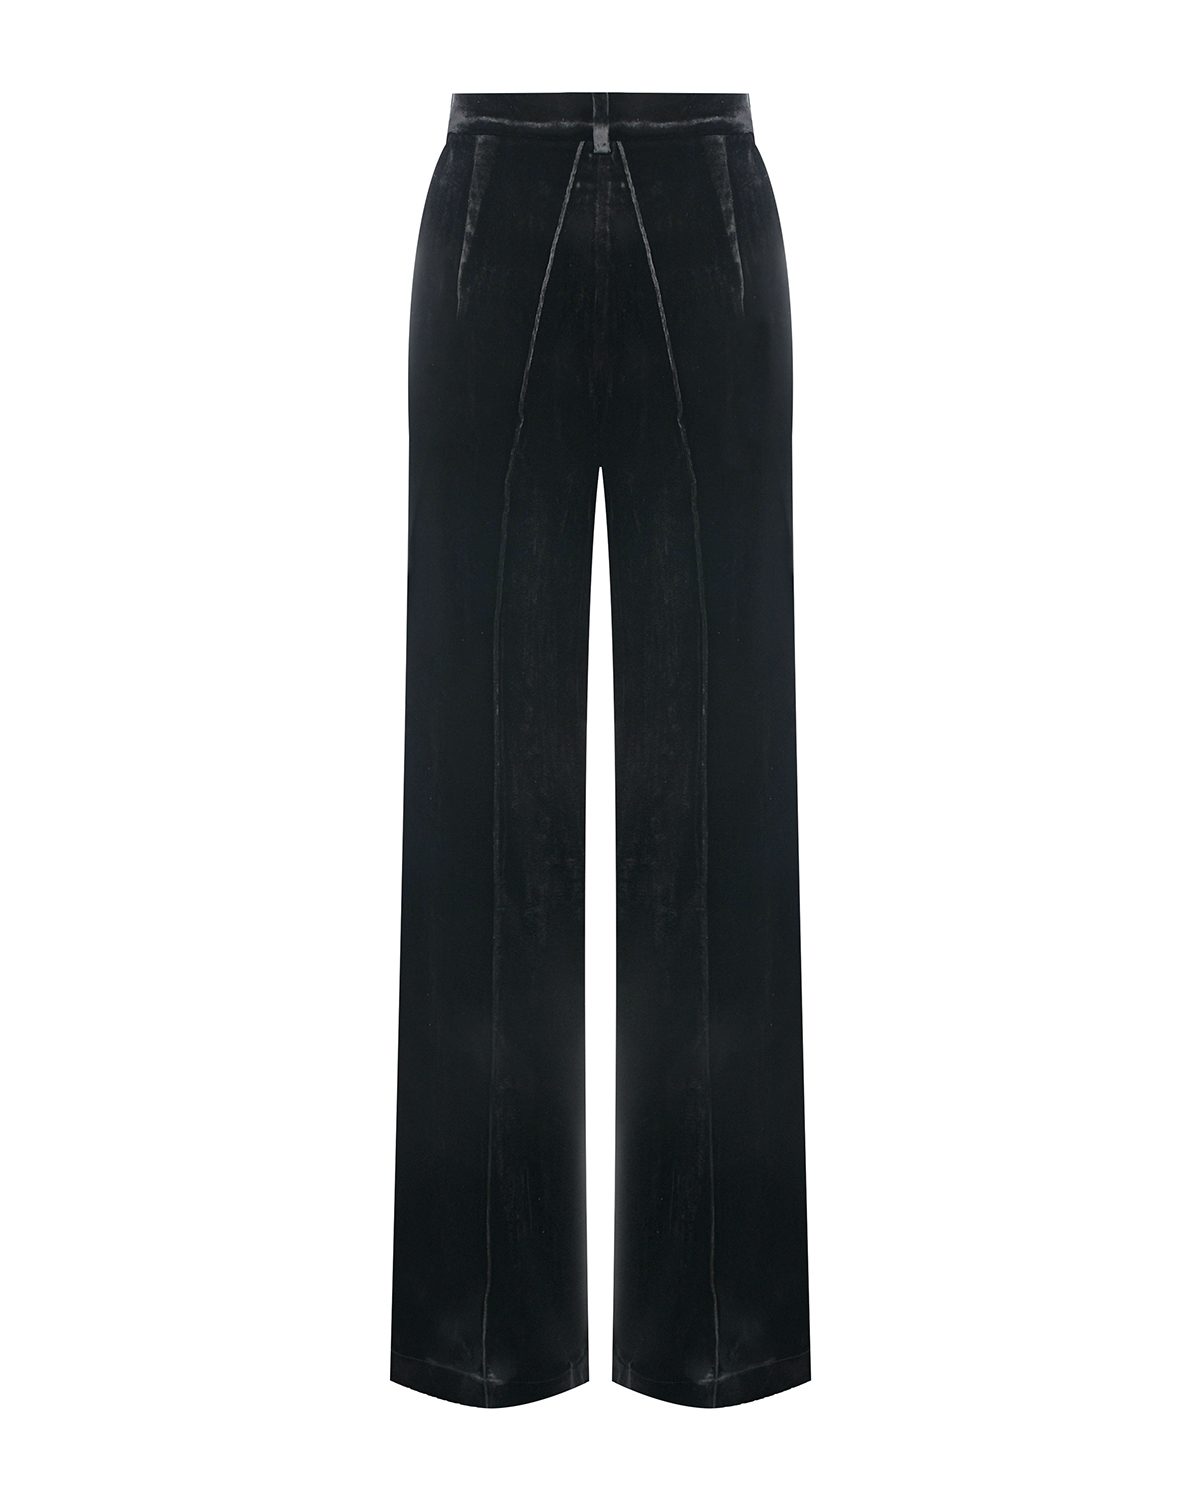 Черные бархатные брюки ALINE, размер 40, цвет черный - фото 2